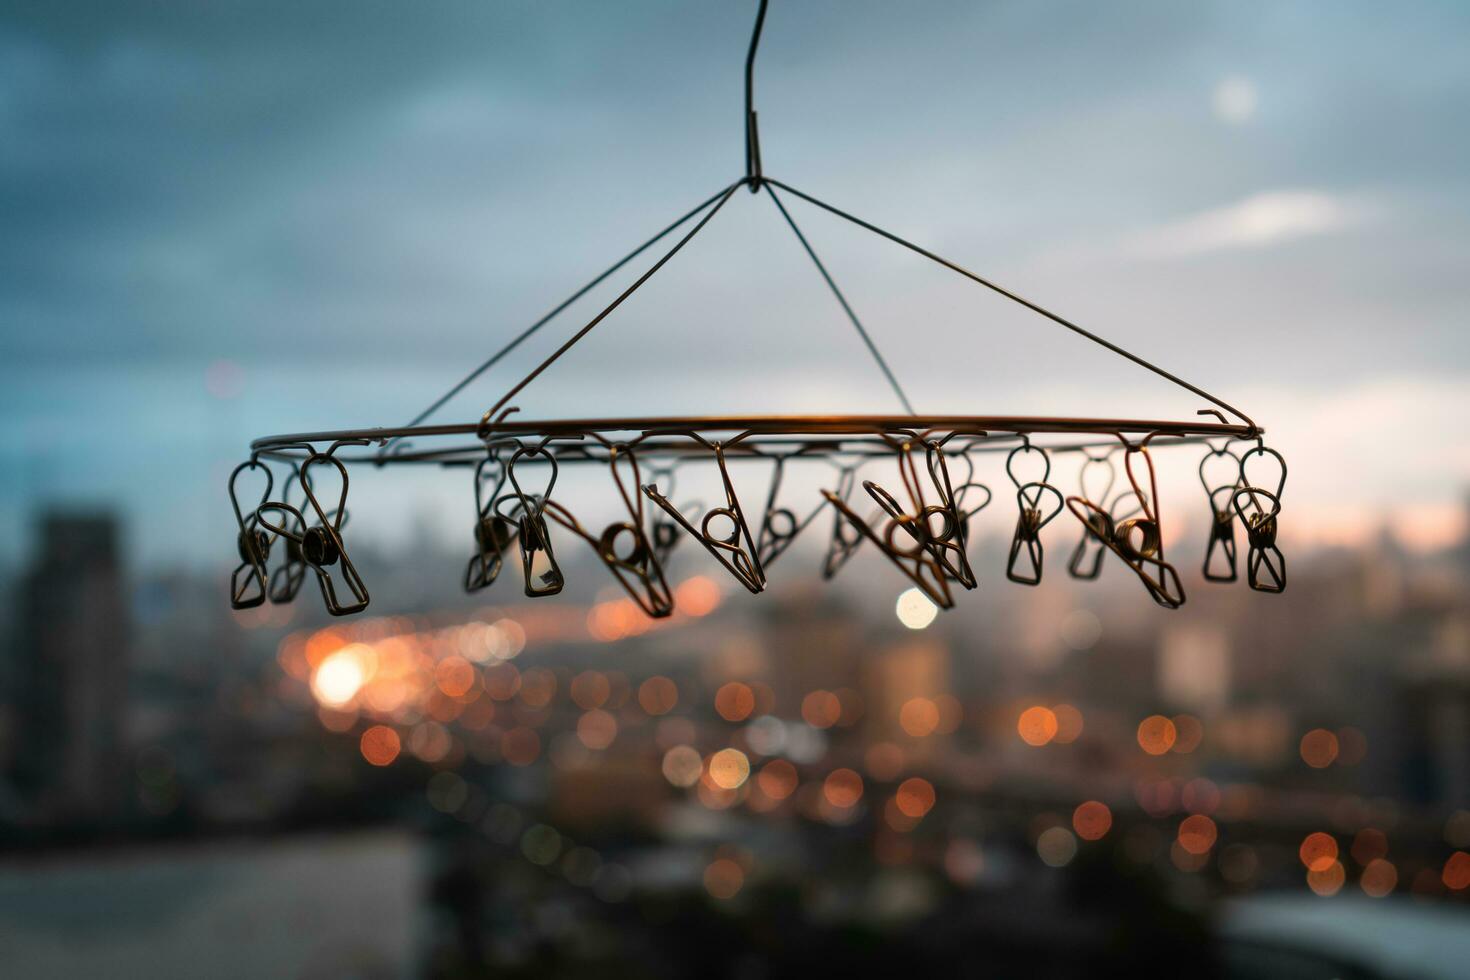 stänga upp av rostfri stål hängande klädnypor med suddig bakgrund av stad i regnig dag foto